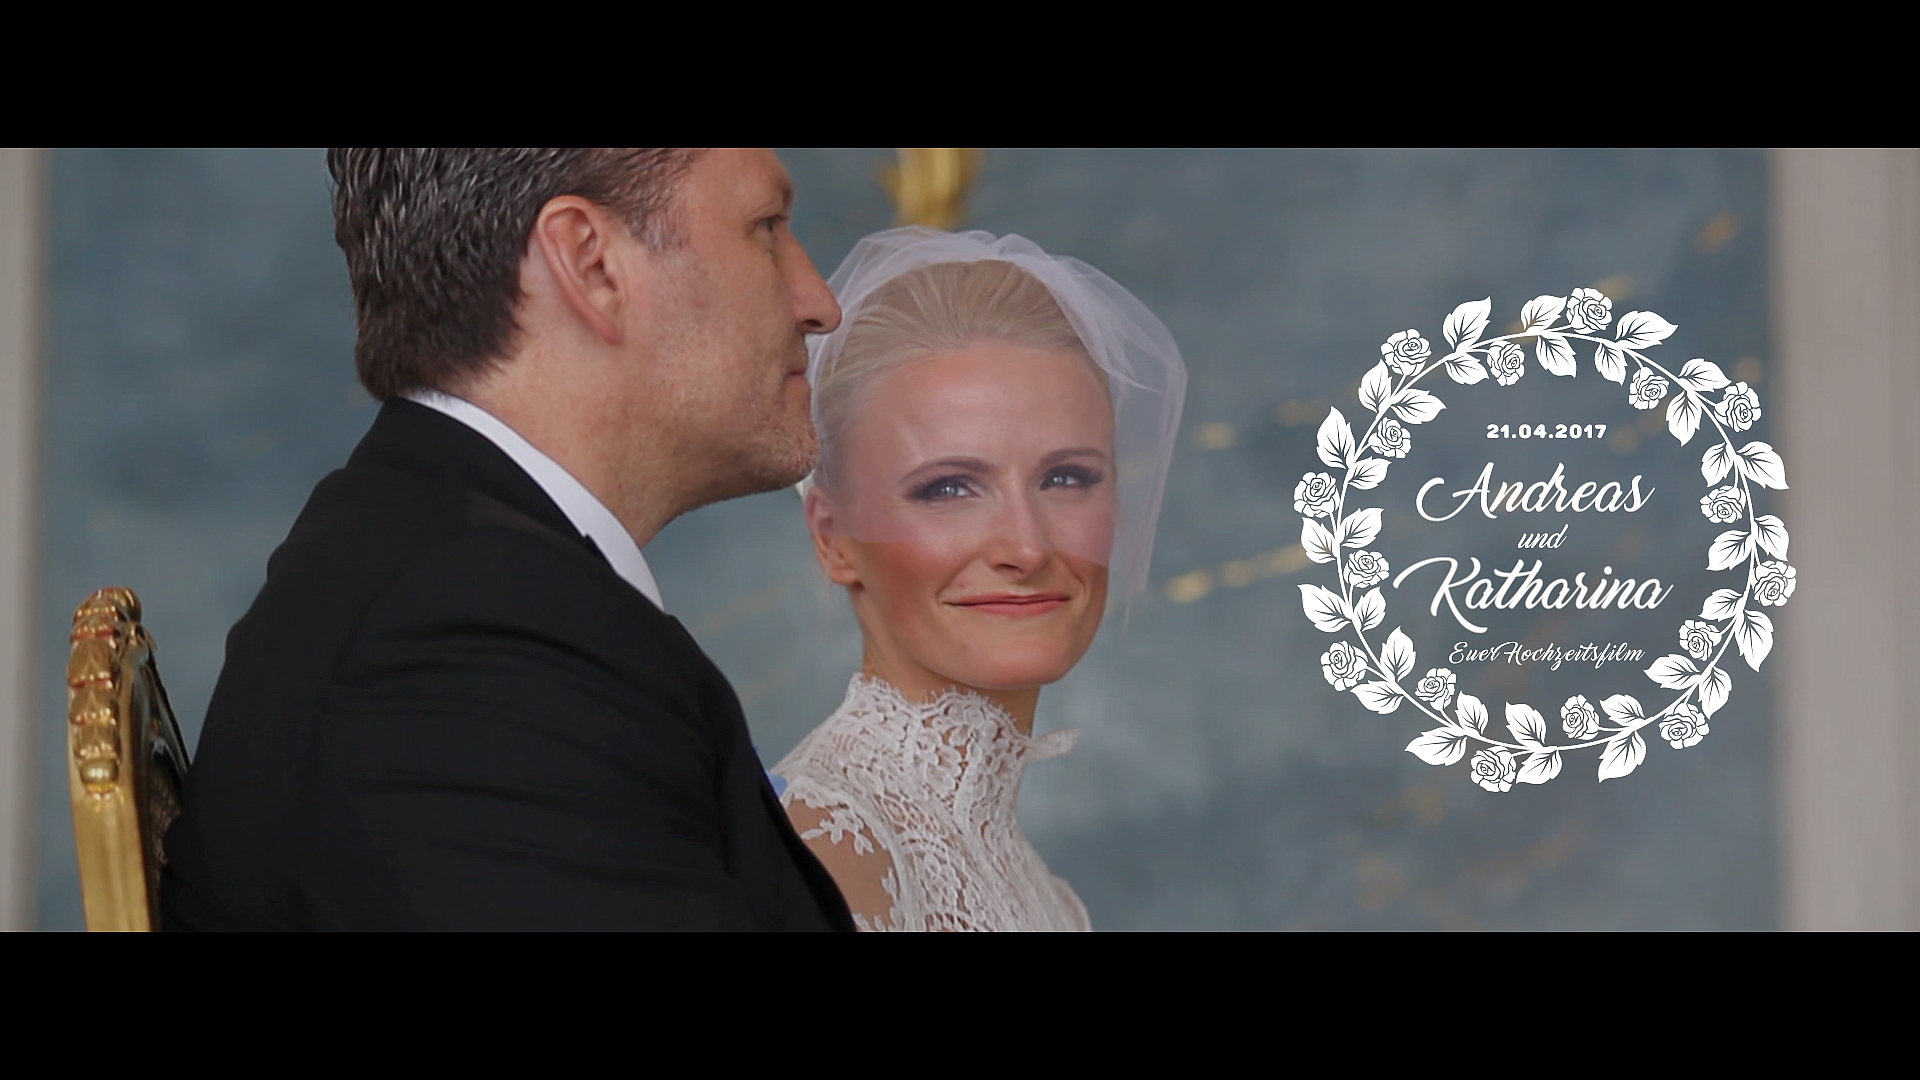 NEUE KAMMERN im Schloss Sanssouci von Potsdam - heiraten Sie nicht ohne einen traumhaft schönen Hochzeitsfilm. Daleen hält ihren Tag in weiß mit der Filmkamera fest. Für emotionale bewegte Momente auf Film - Ihr Hochzeitsfilm